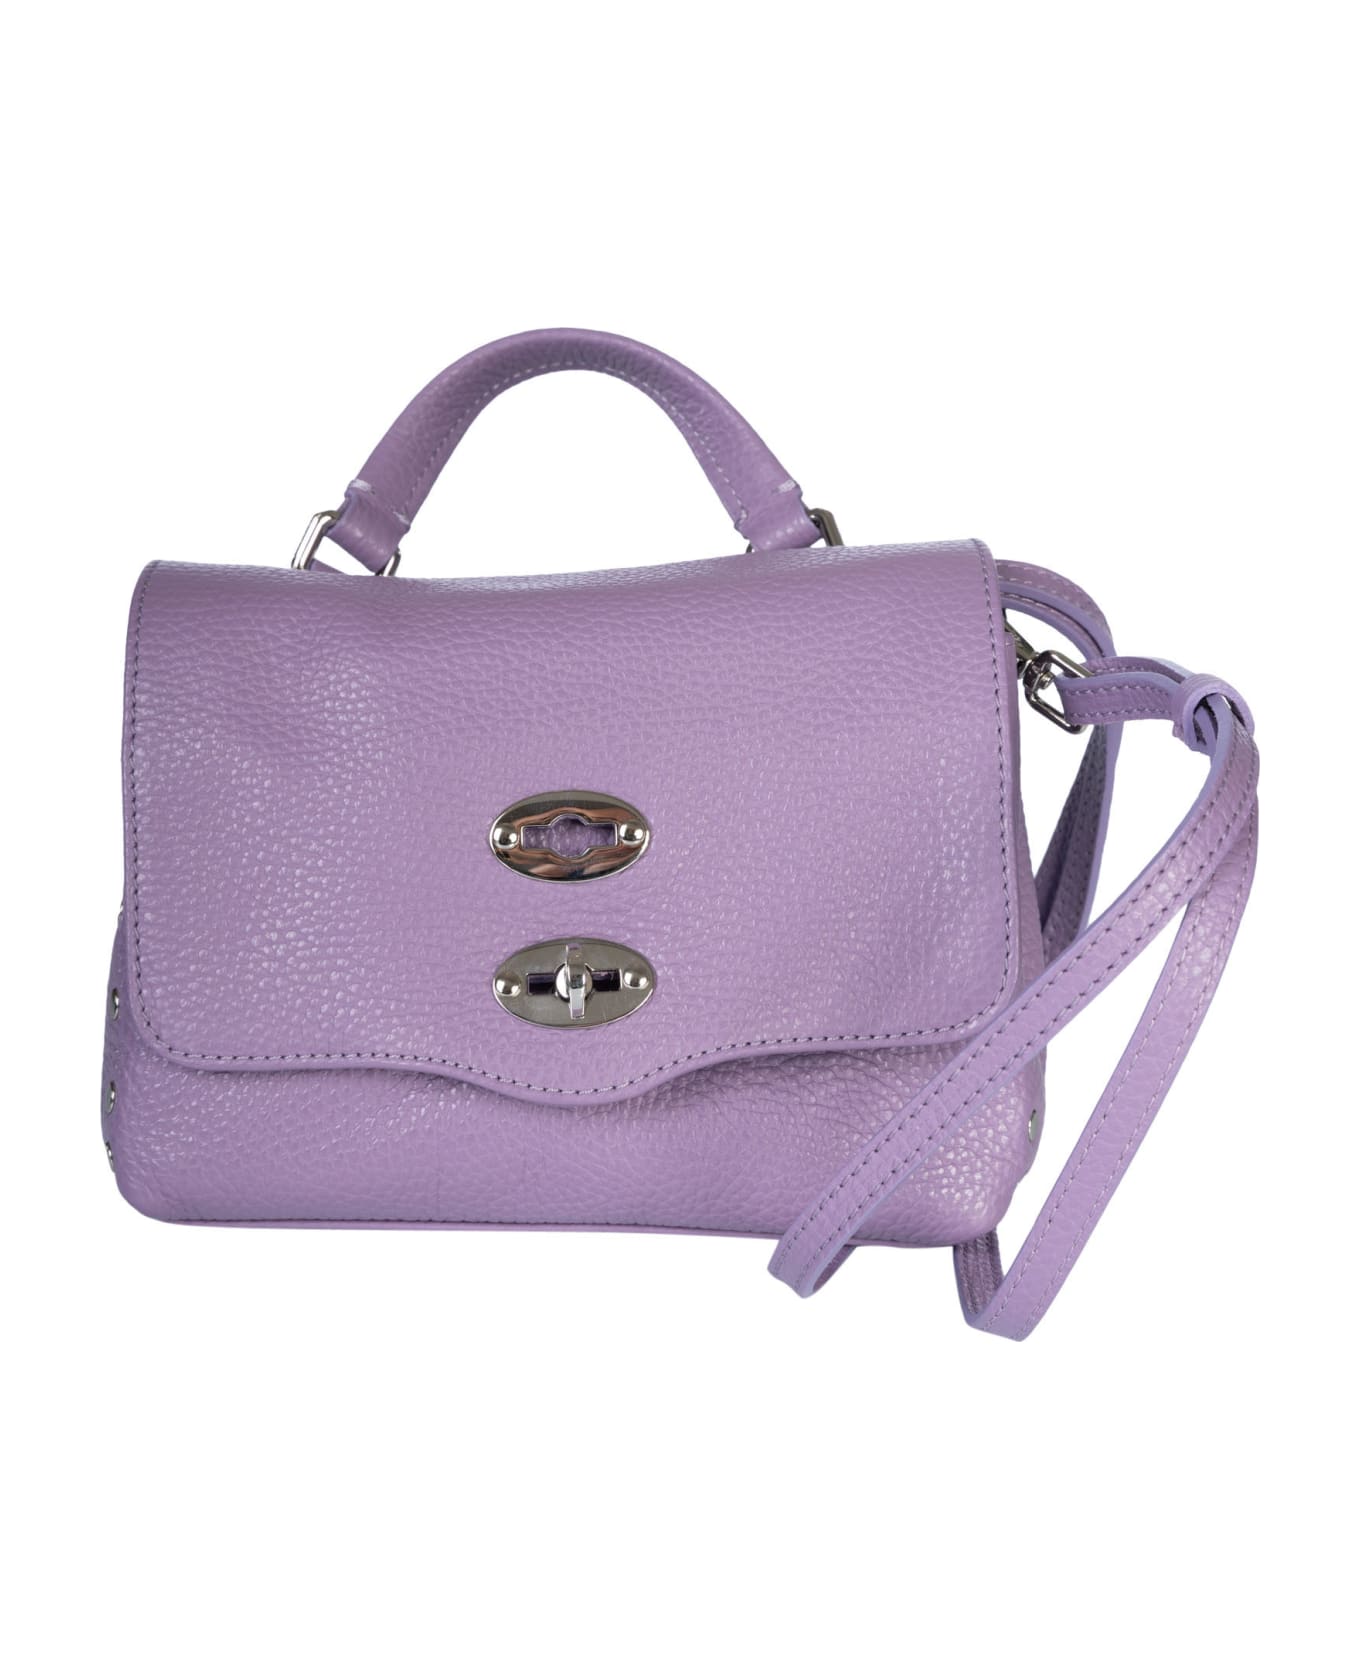 Zanellato Postina Daily Shoulder Bag - Violet トートバッグ